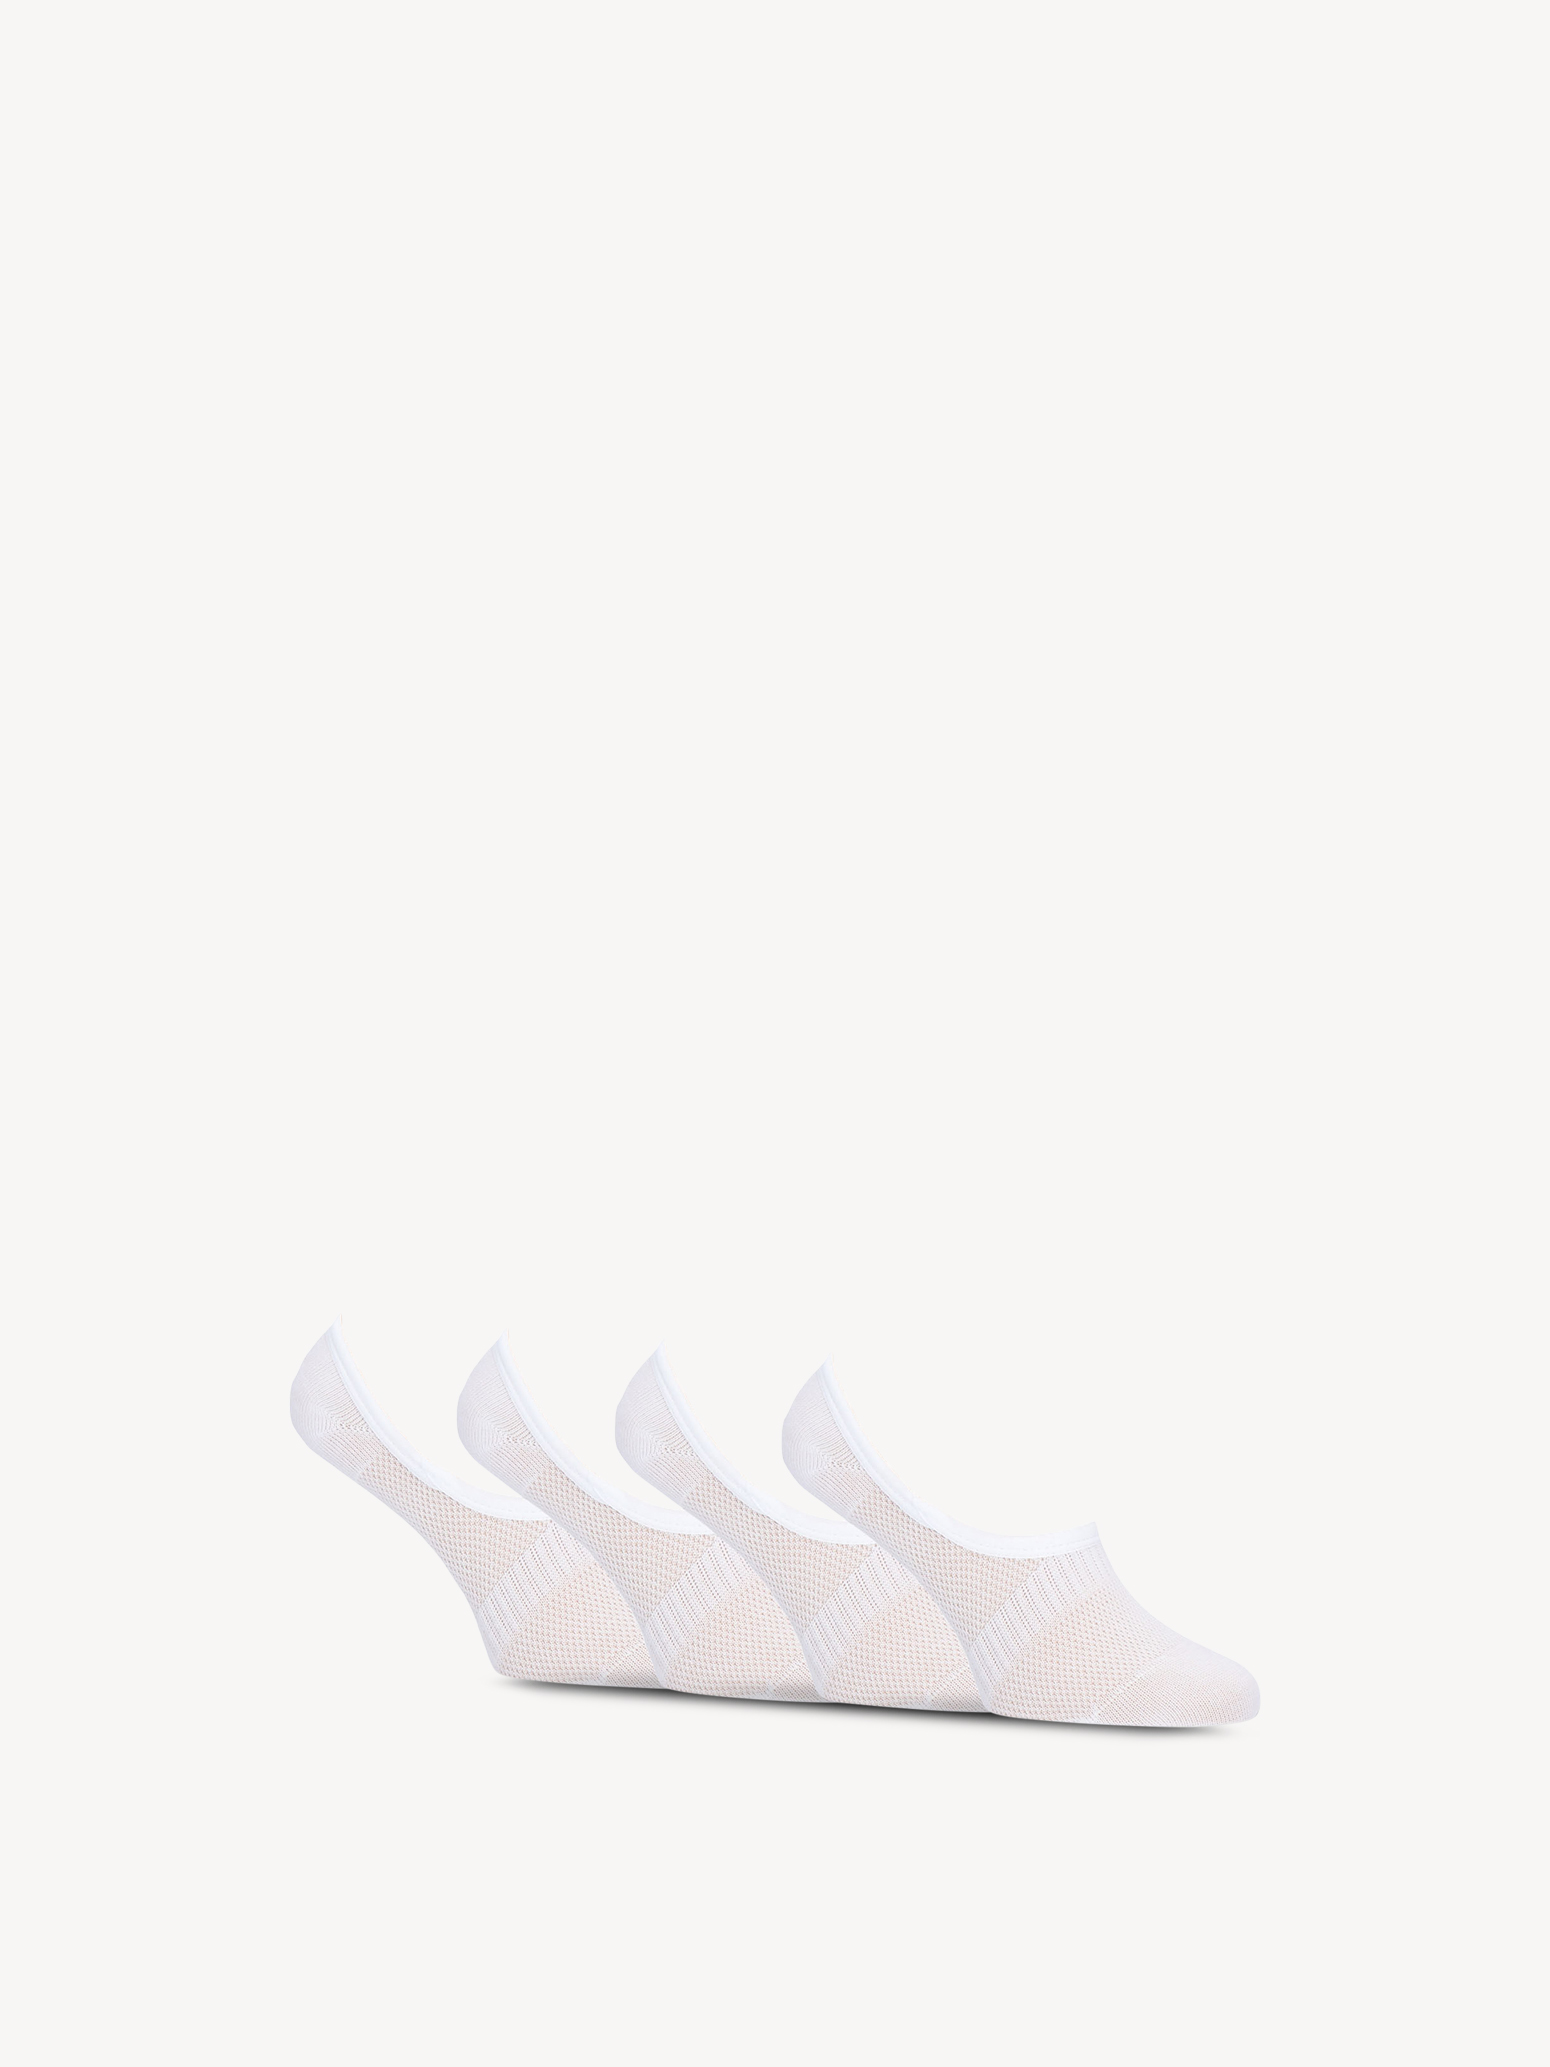 Socks 4-pack - white